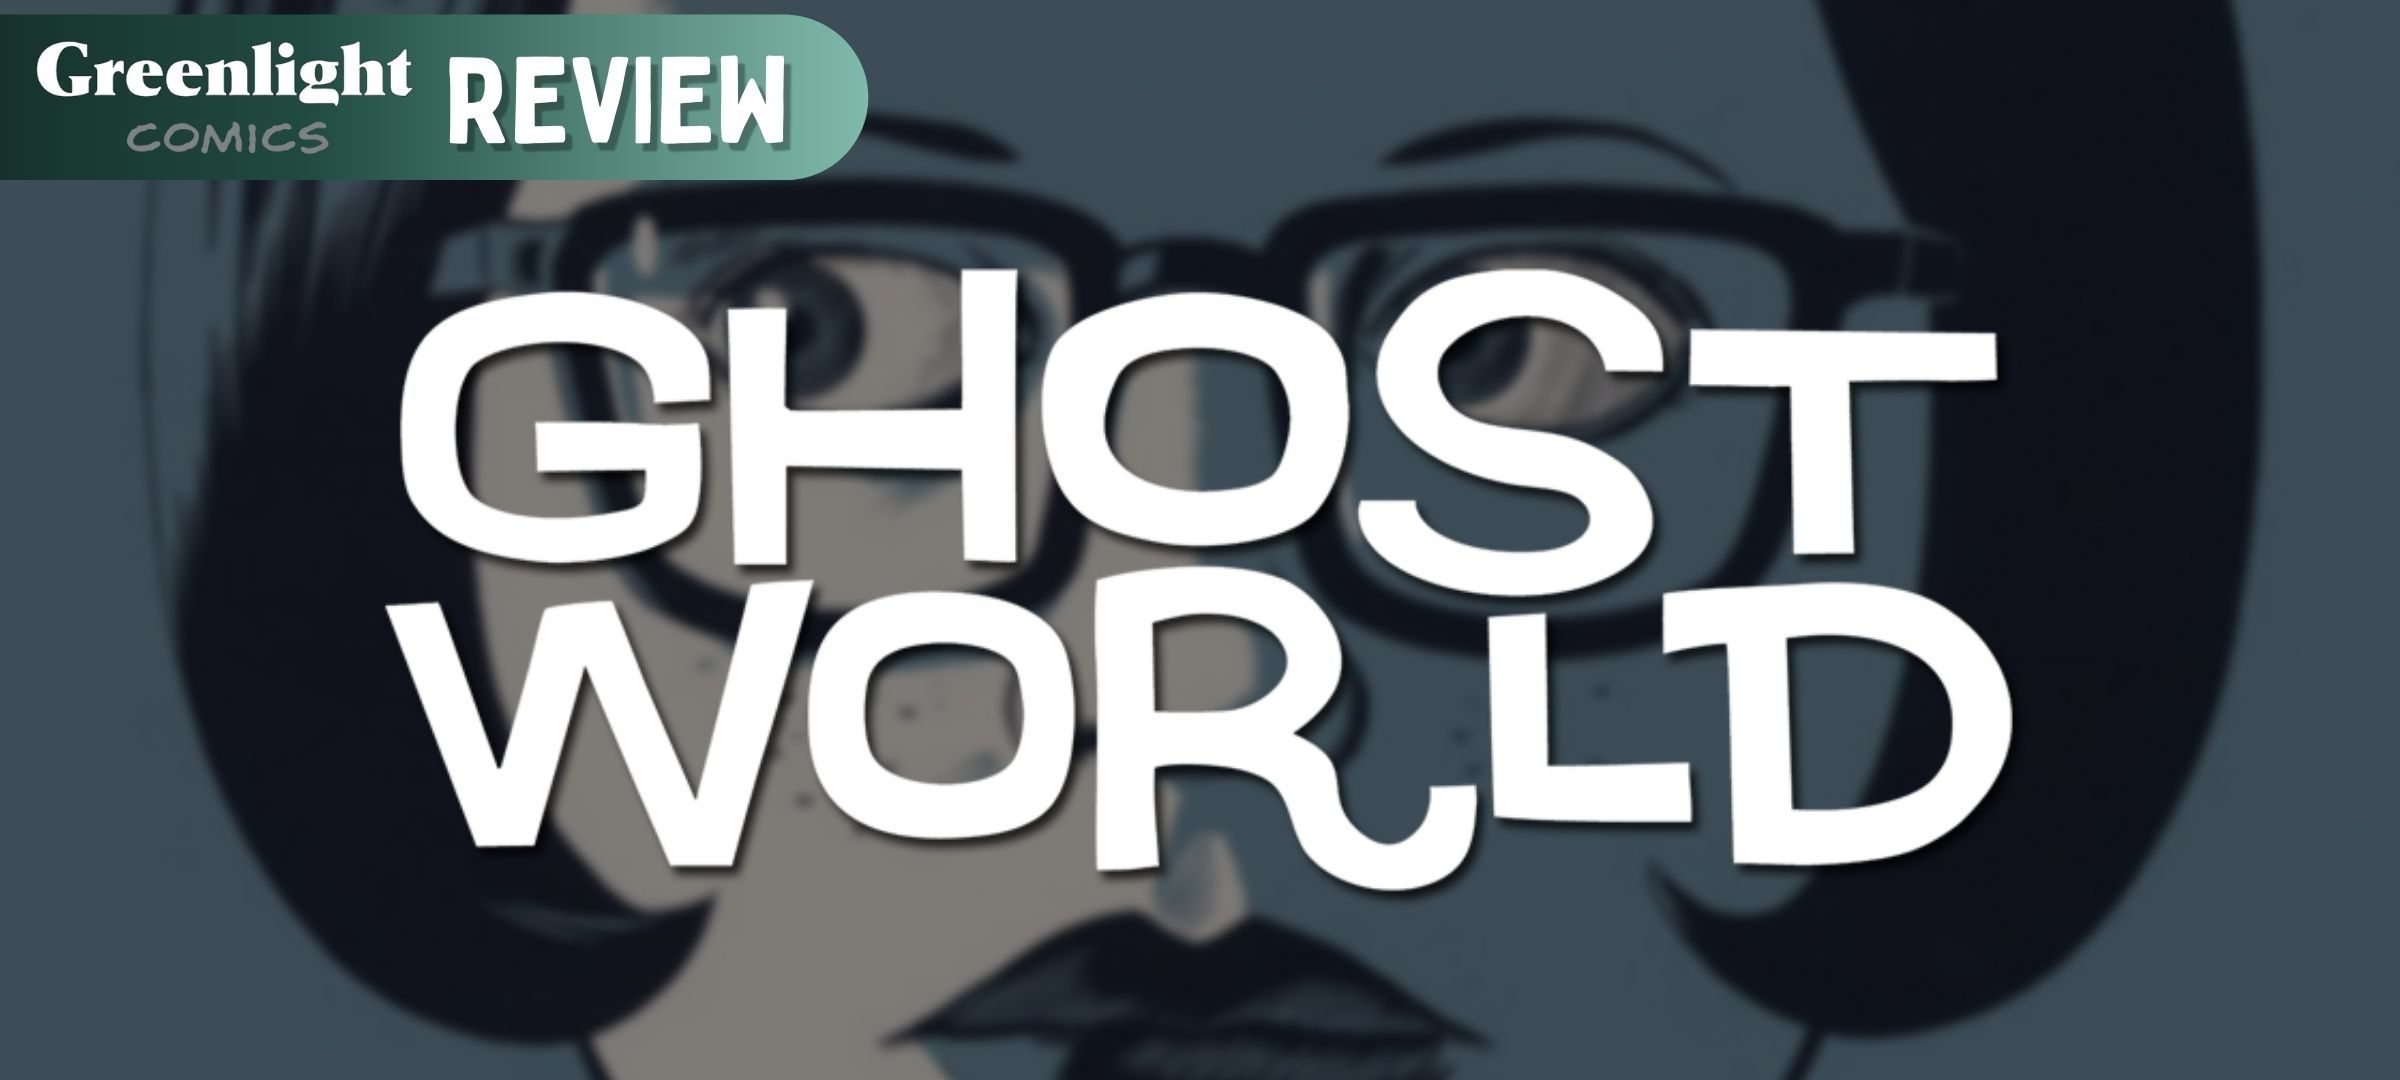 ghostworldreview